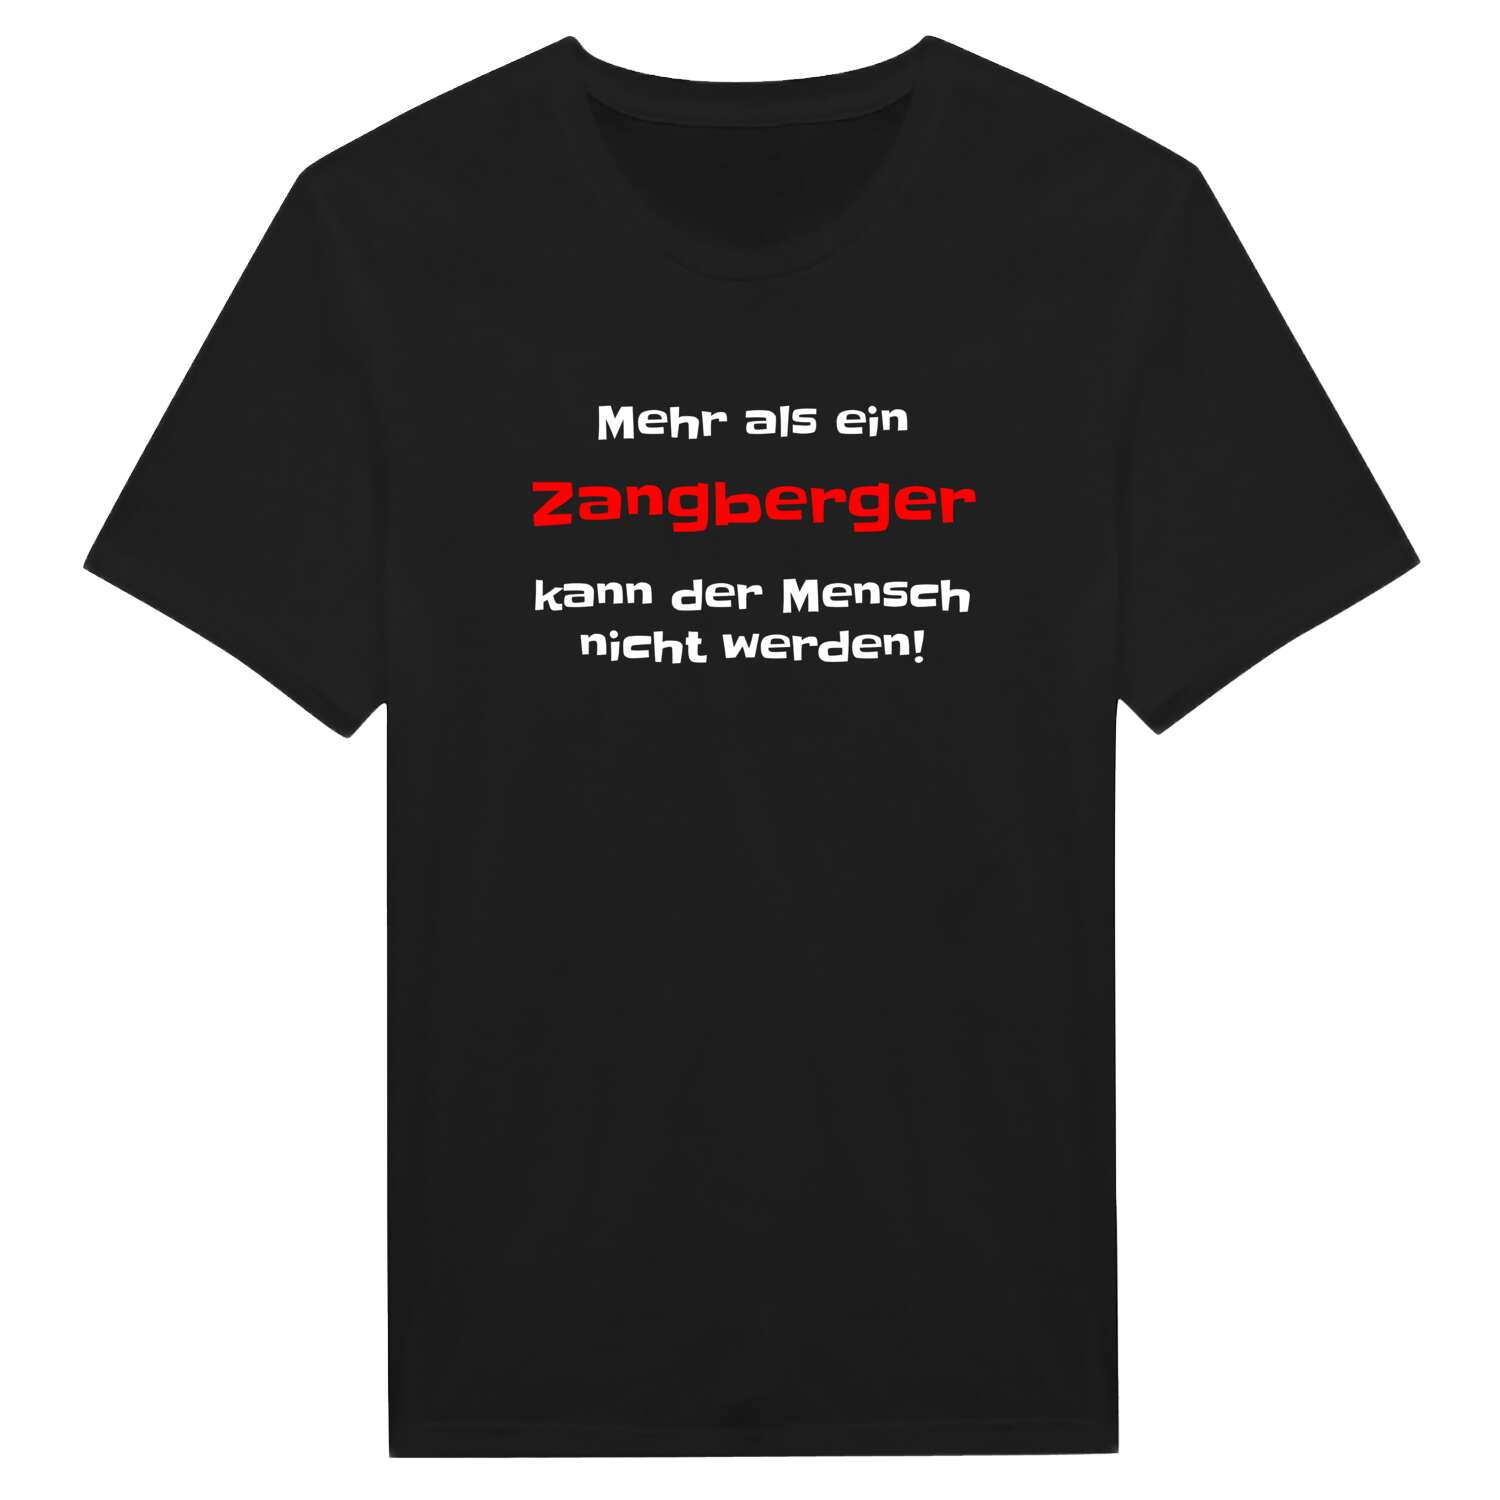 Zangberg T-Shirt »Mehr als ein«